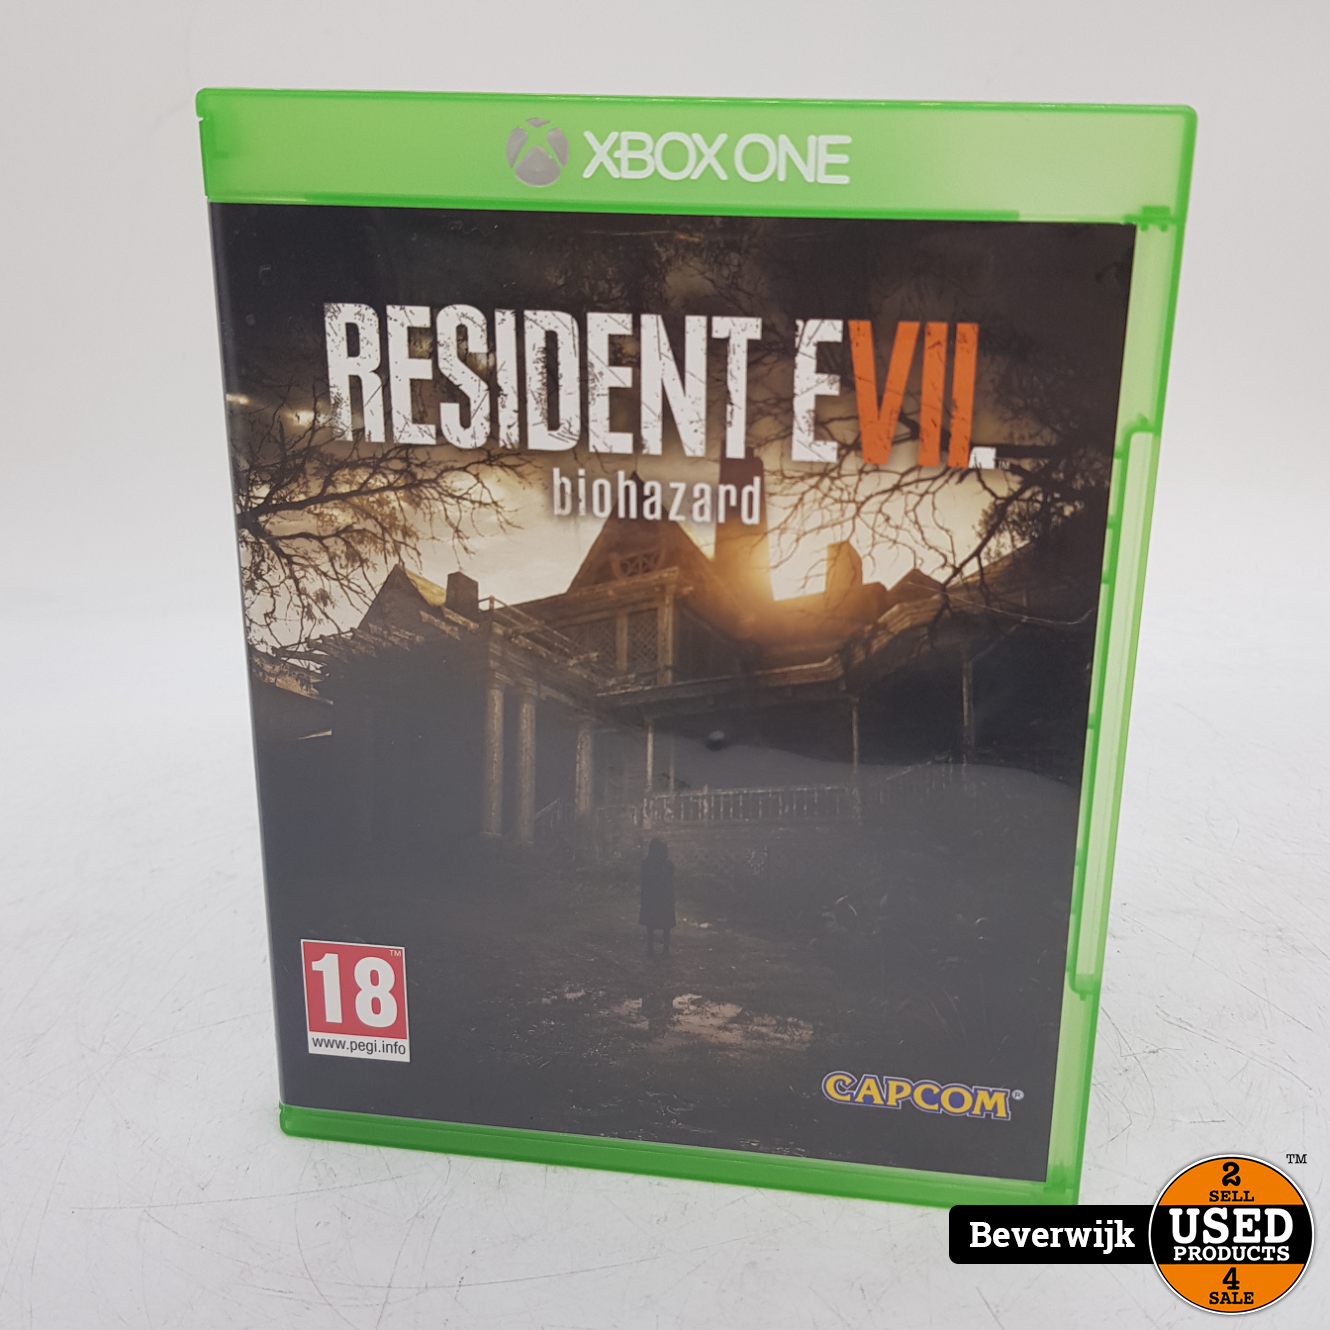 Martelaar Kolonisten binnenplaats Resident Evil Biohazard - Xbox One Game - Used Products Beverwijk